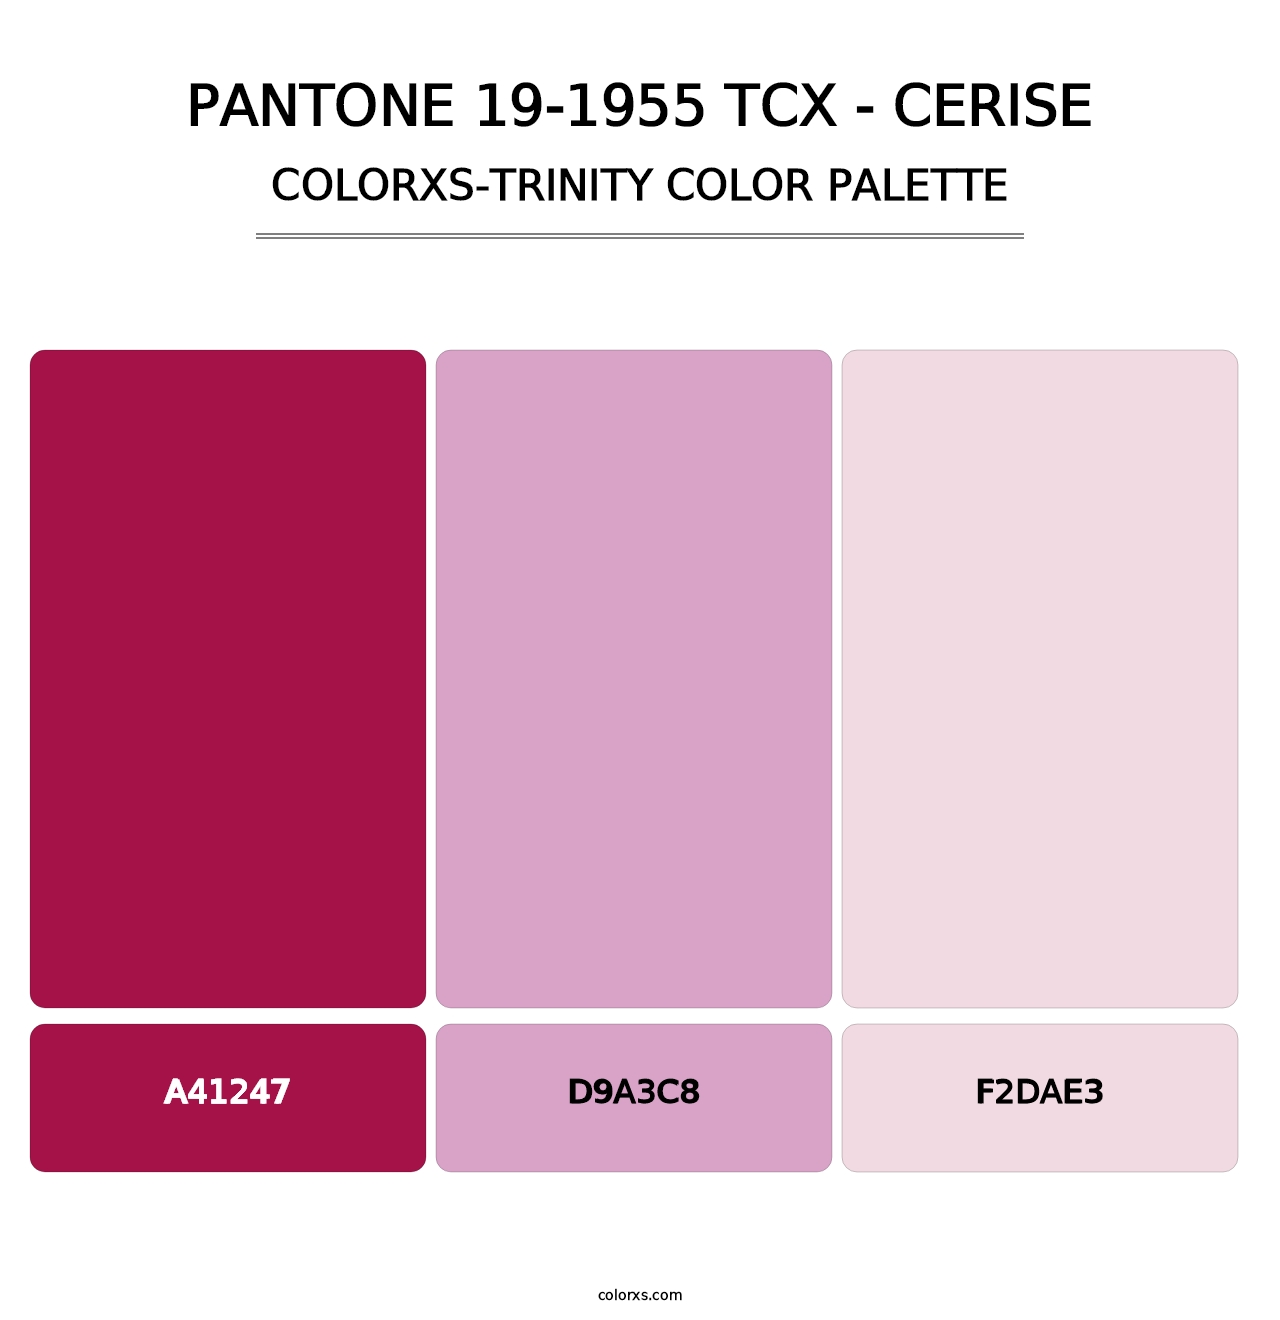 PANTONE 19-1955 TCX - Cerise - Colorxs Trinity Palette